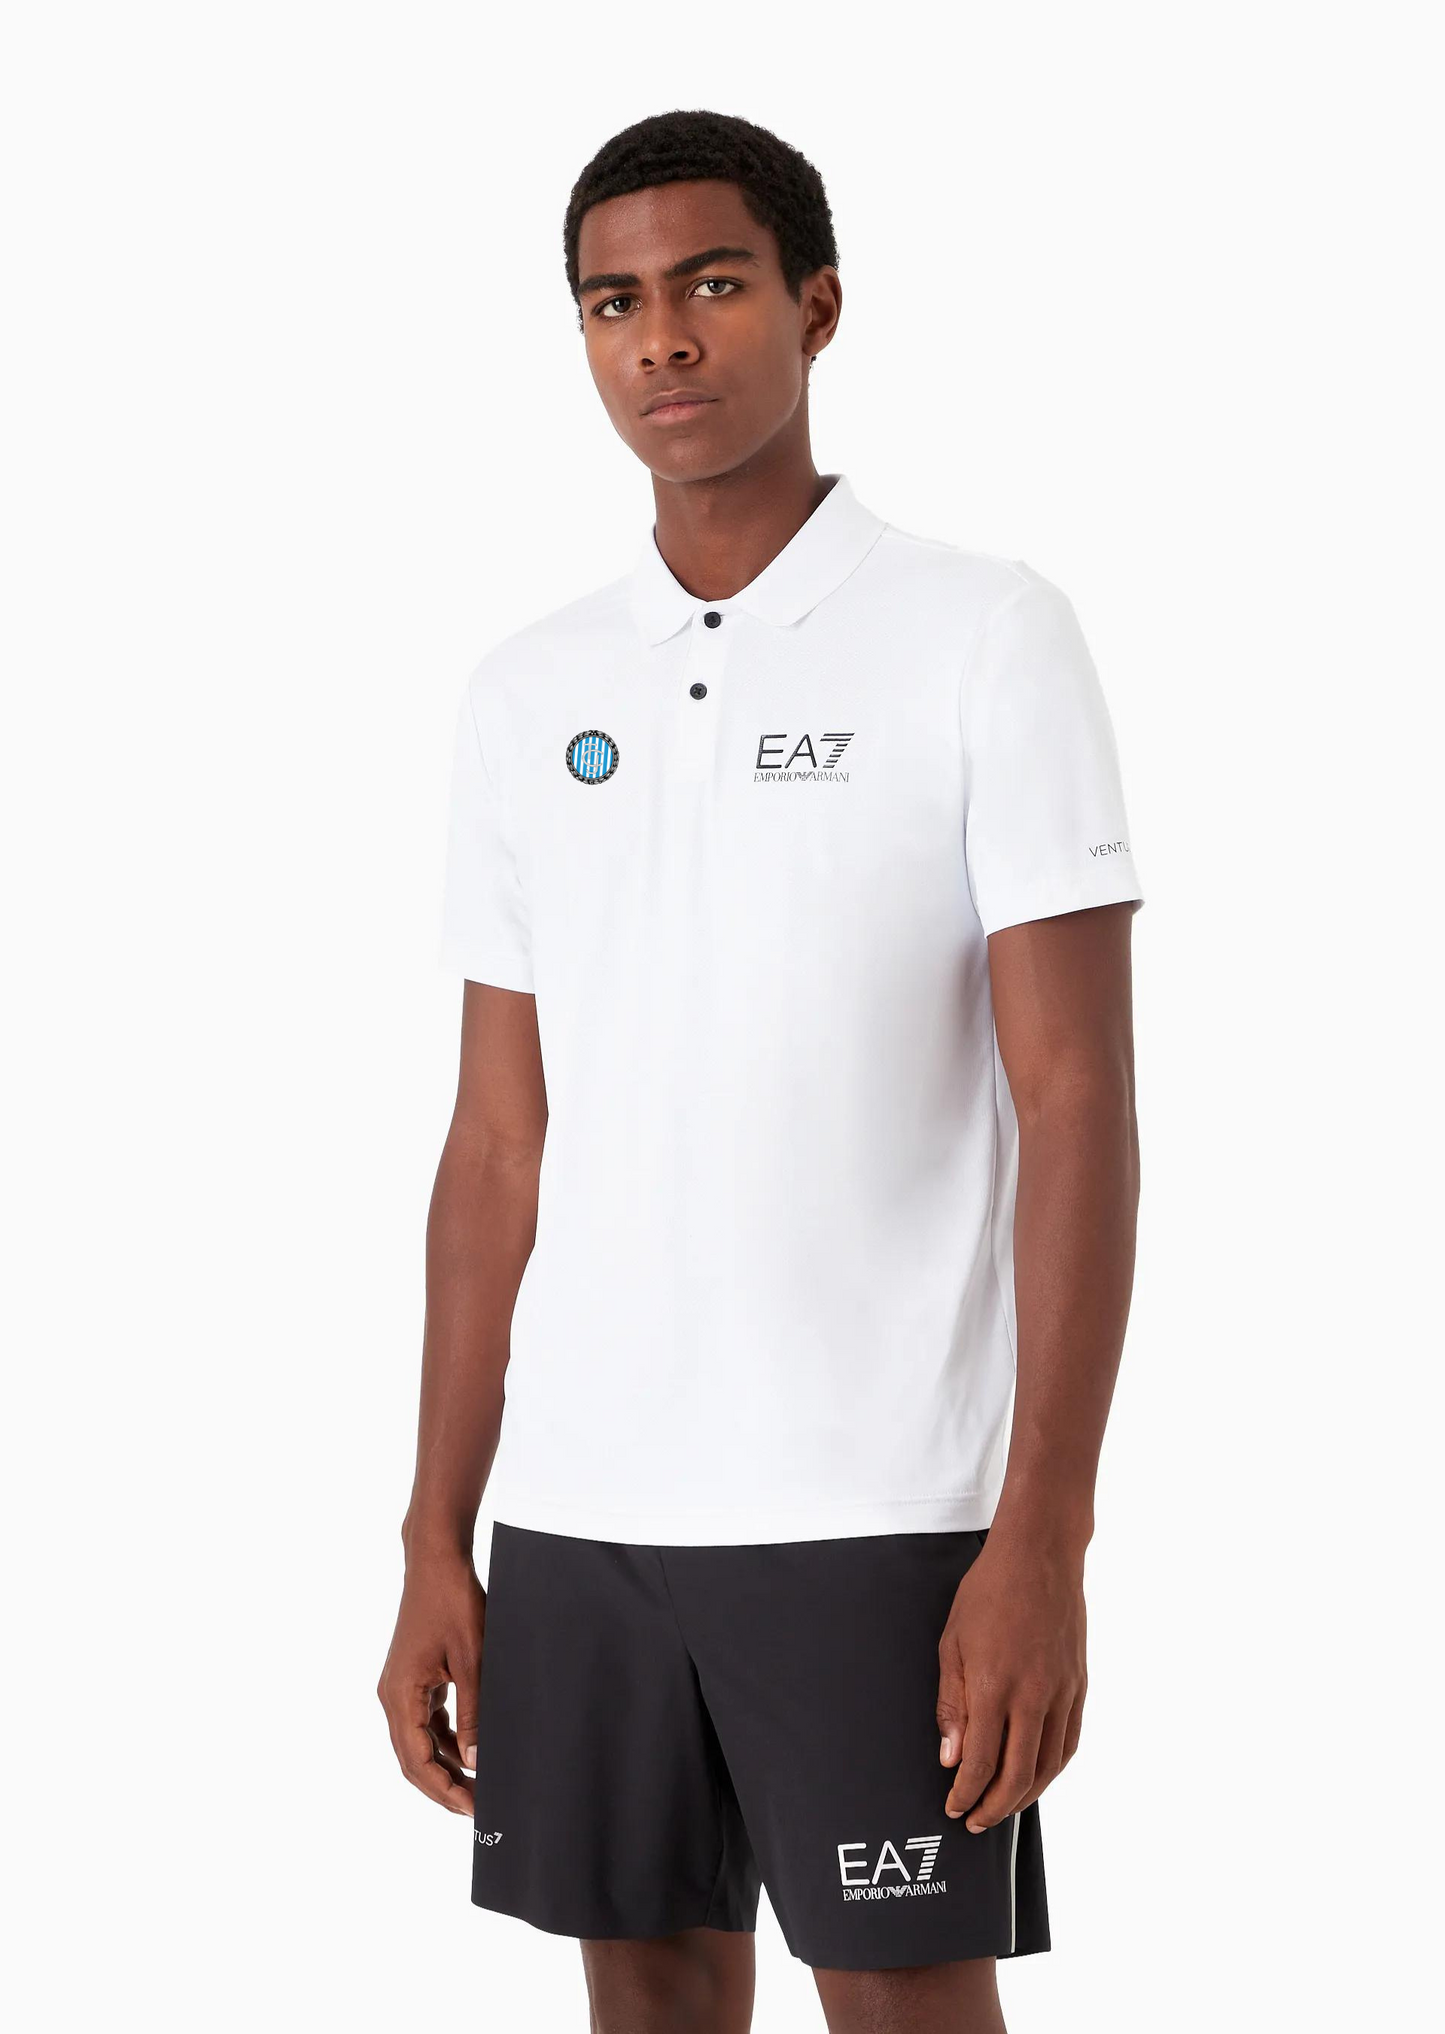 EA7 polo shirt